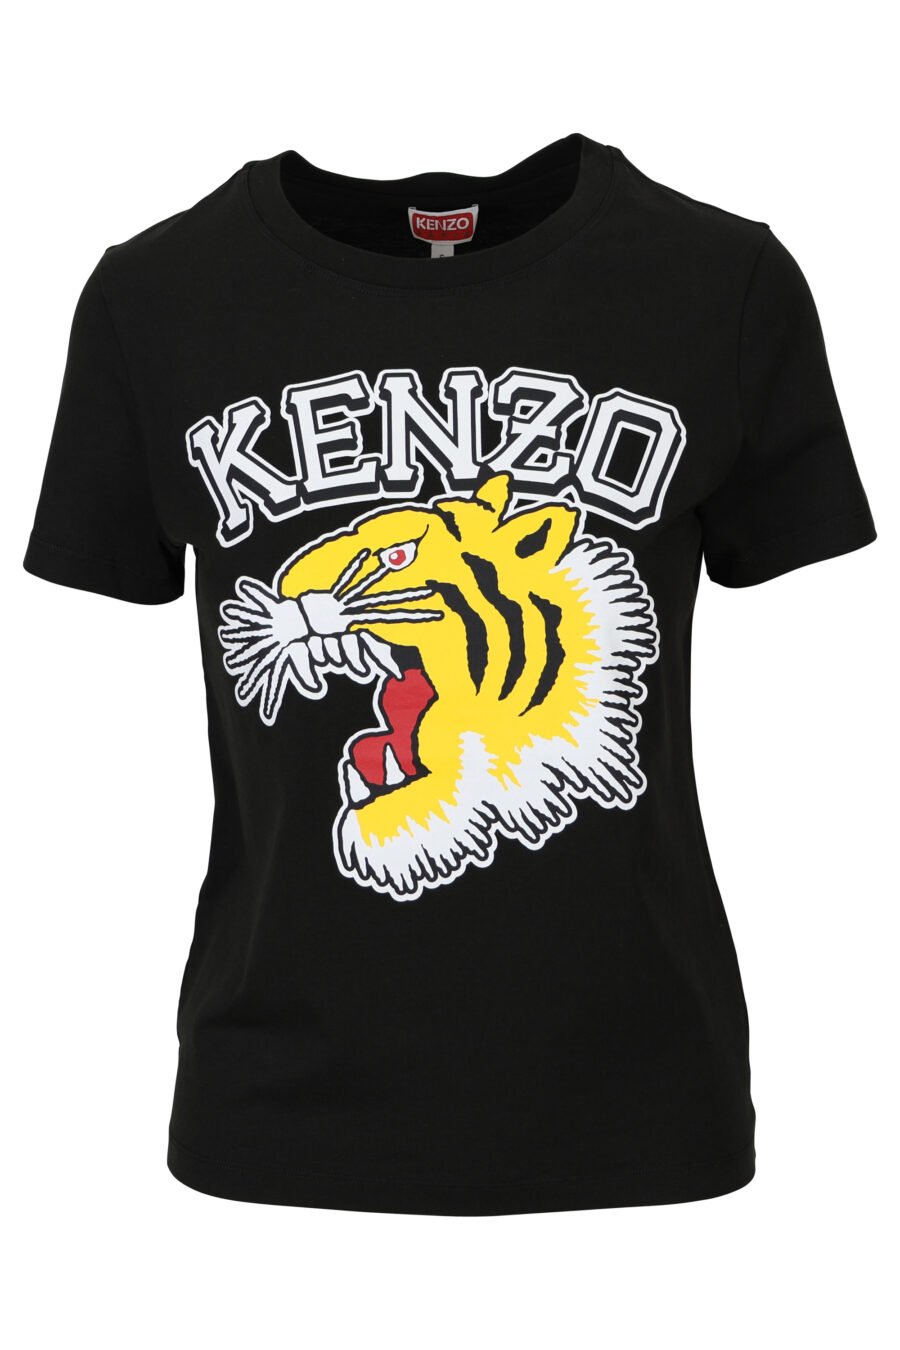 T-shirt preta com o logótipo "tigre" bordado - 3612230552487